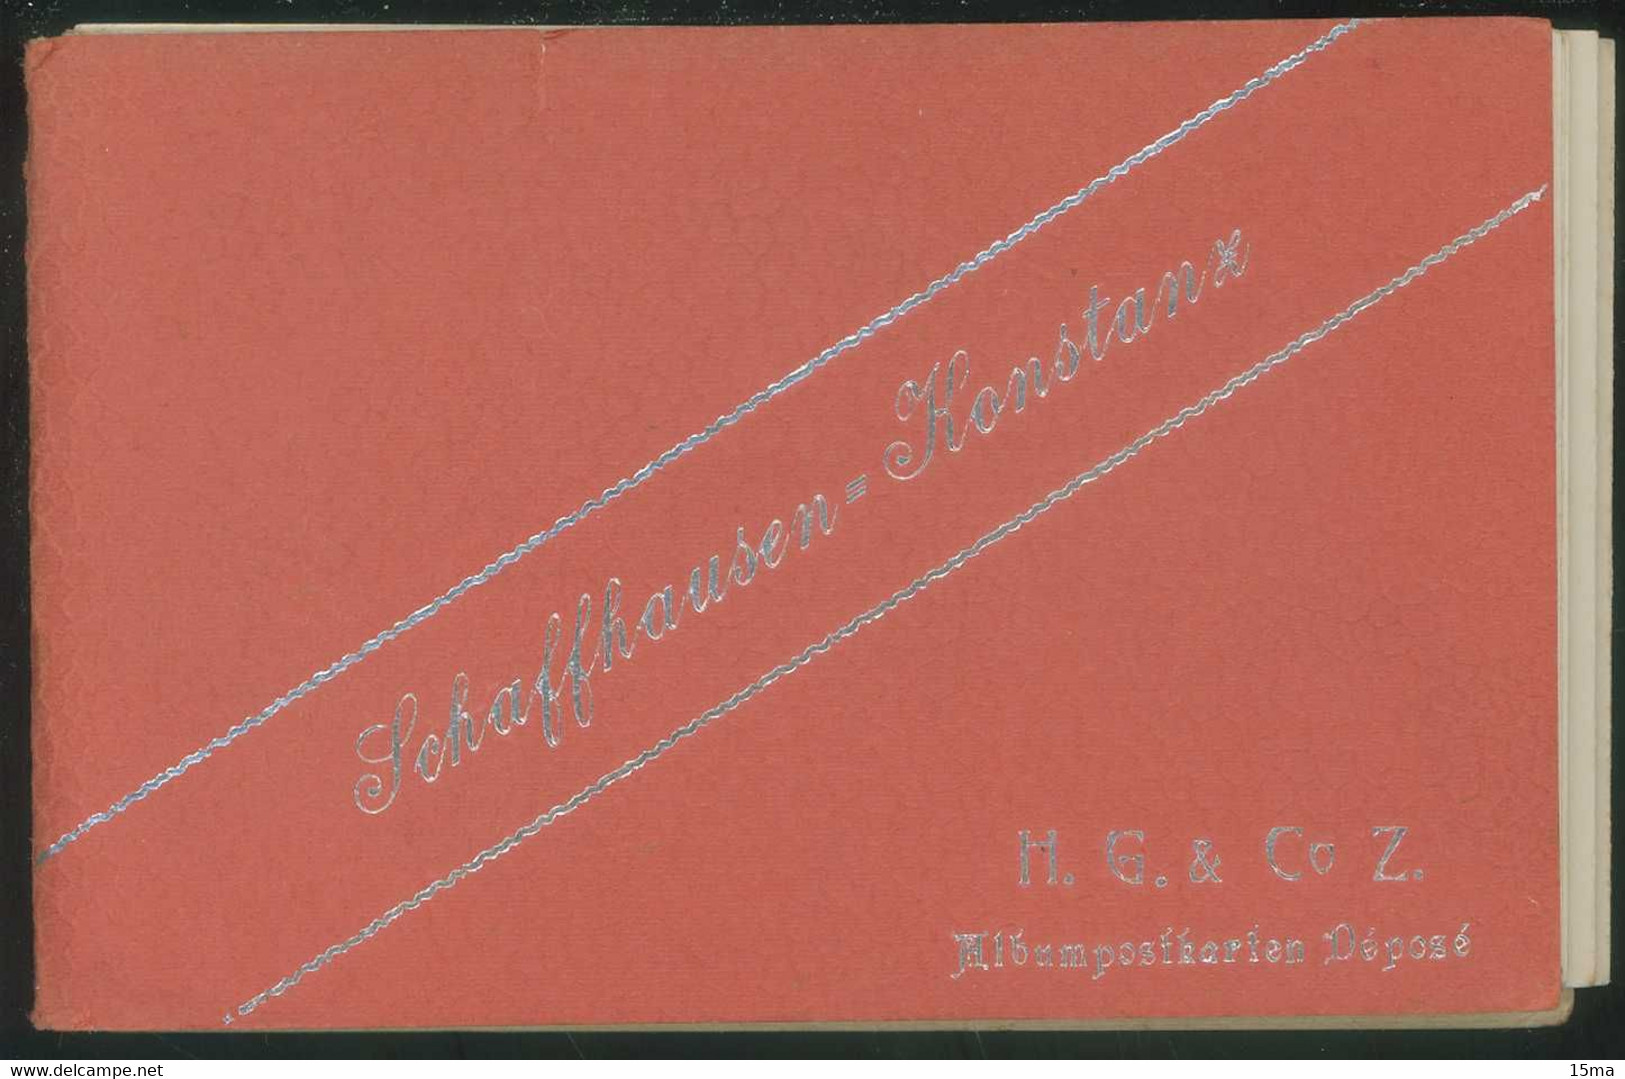 Schaffhausen Konstanz Albumpostkarten Carnet De 13 Cartes Postales Stein Am Rhein Basel Ermatingen Diessenhofen Arenenbe - Diesse